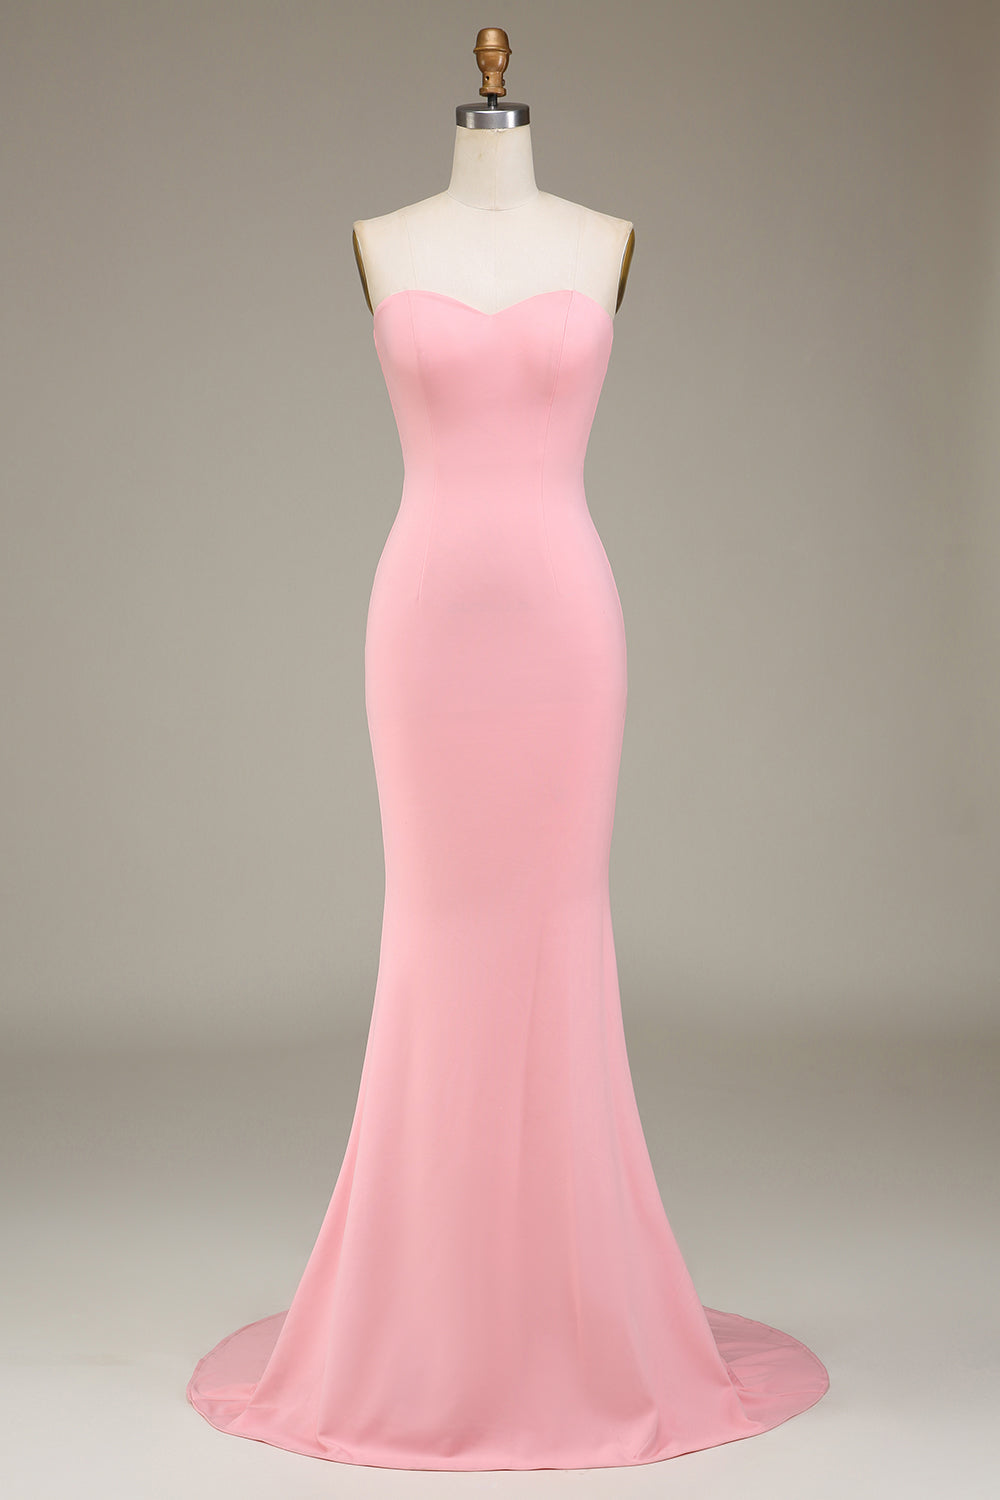 Blozen roze zeemeermin Sweetheart satijnen lange bruidsmeisje jurk